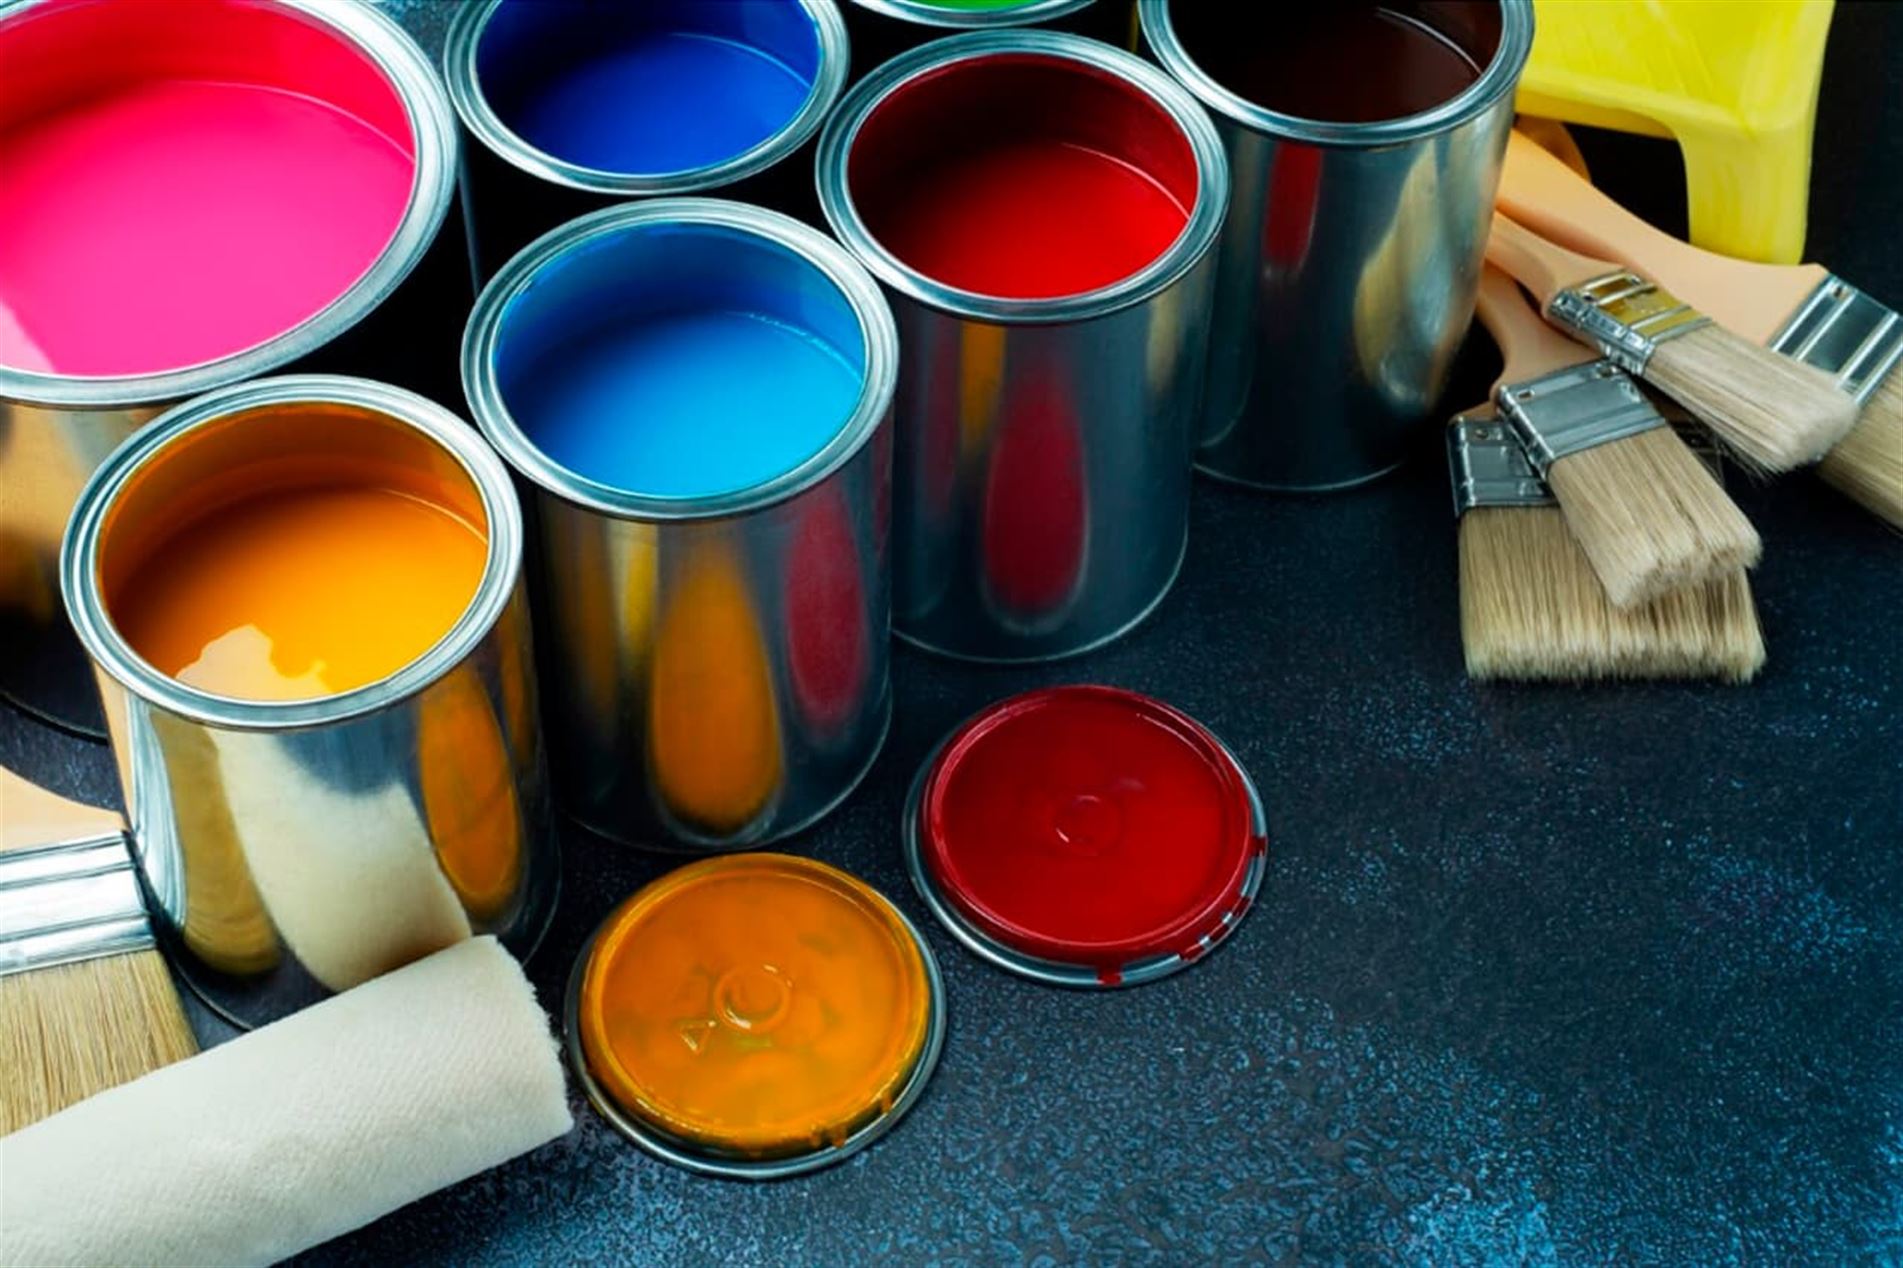 Cómo usar los Disolventes correctamente✓ Para limpiar, pintura